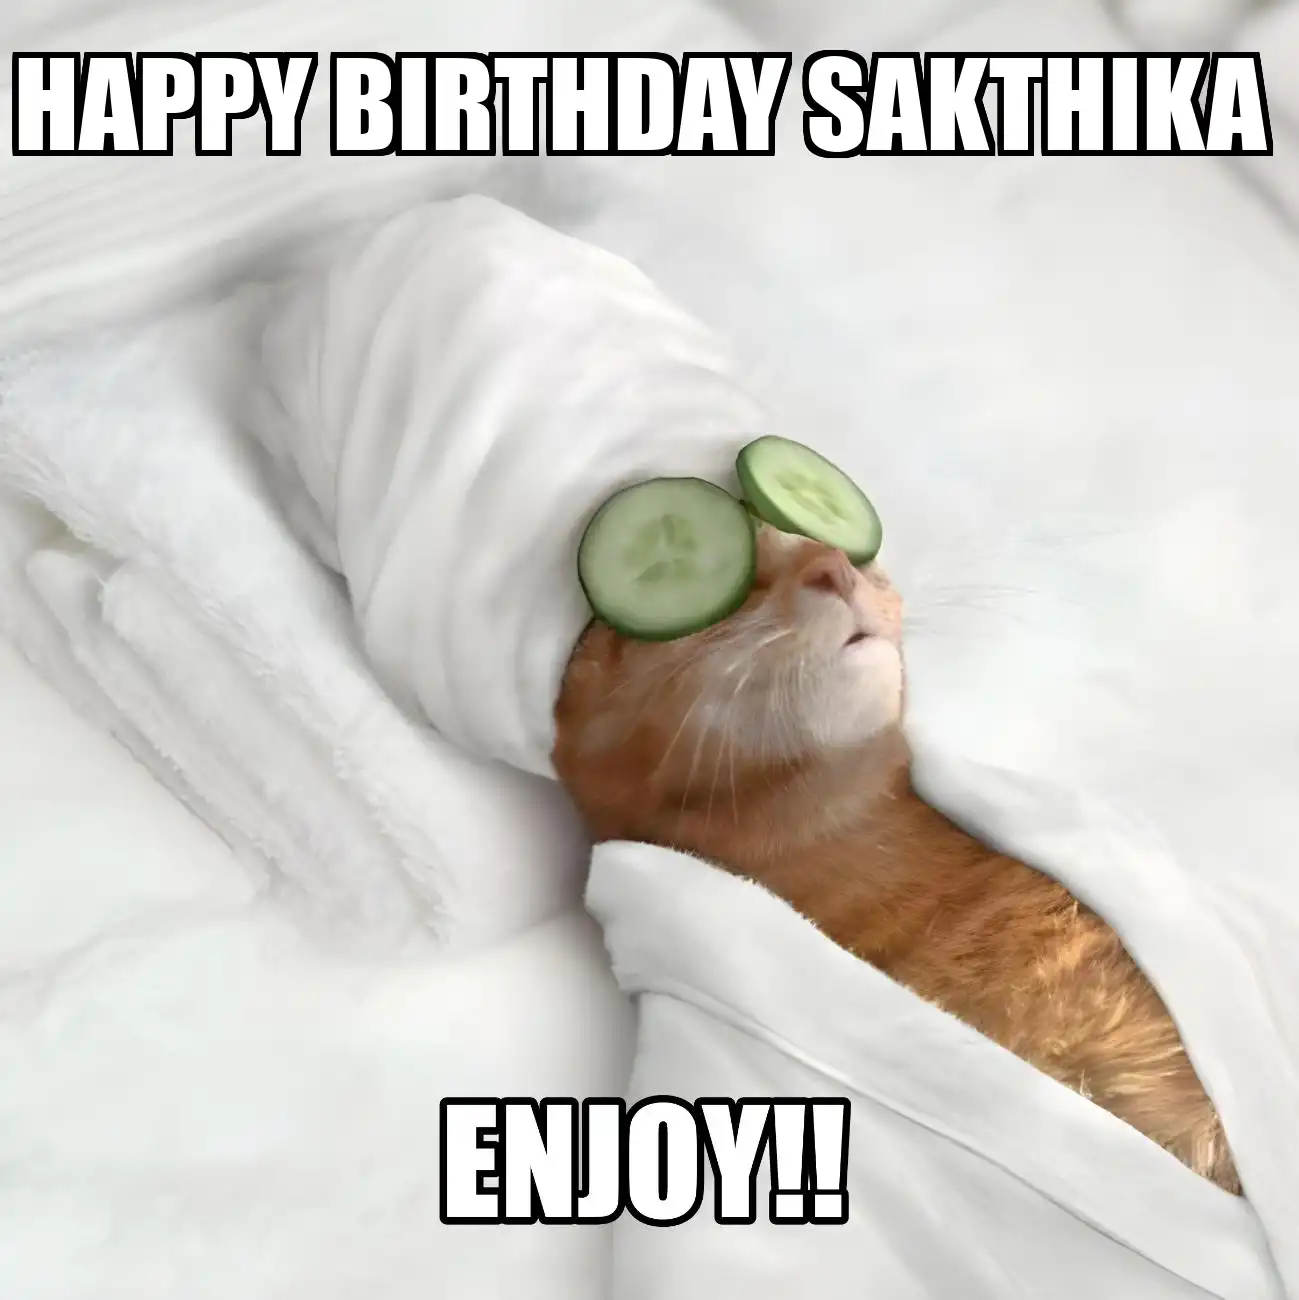 Happy Birthday Sakthika Enjoy Cat Meme